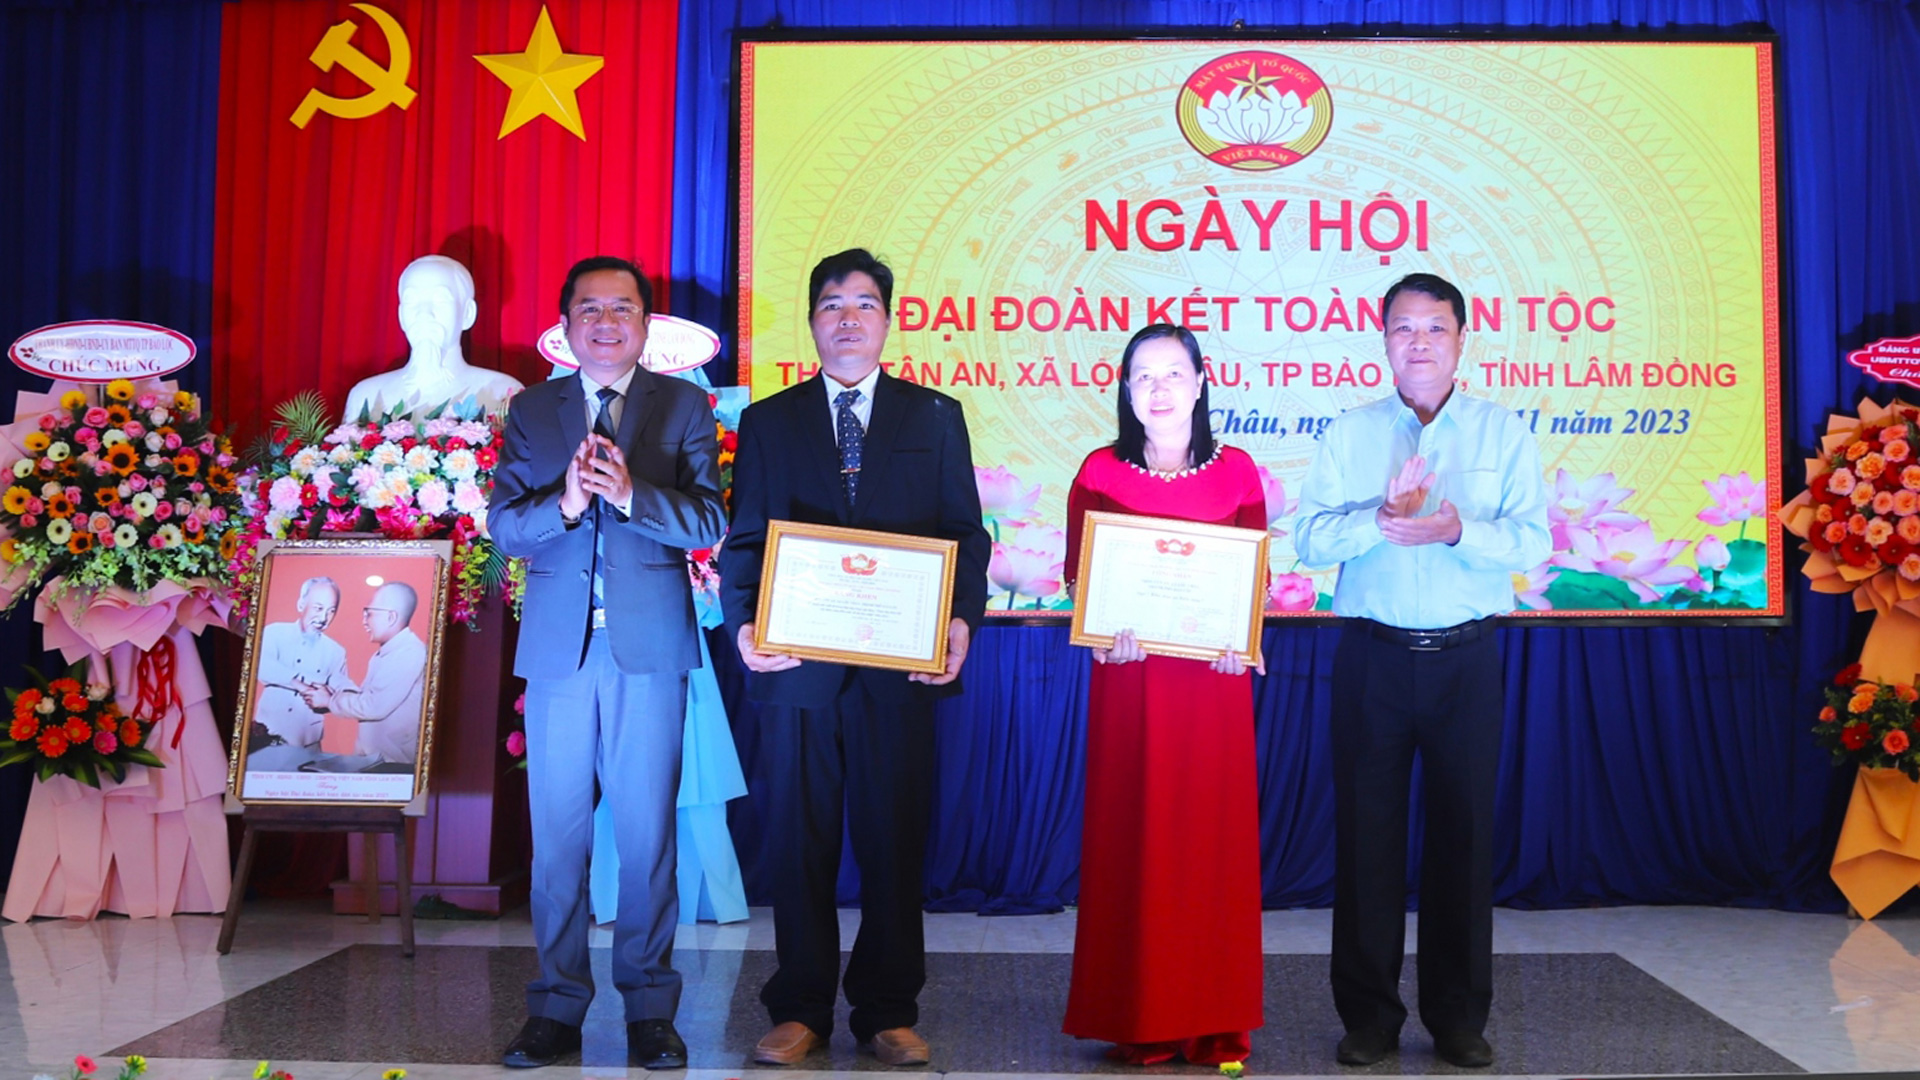 Cán bộ, Nhân dân thôn Tân An (xã Lộc Châu) nhận Quyết định công nhận Khu dân cư kiểu mẫu và Bằng khen của Ủy ban MTTQ Việt Nam tỉnh Lâm Đồng trao tặng